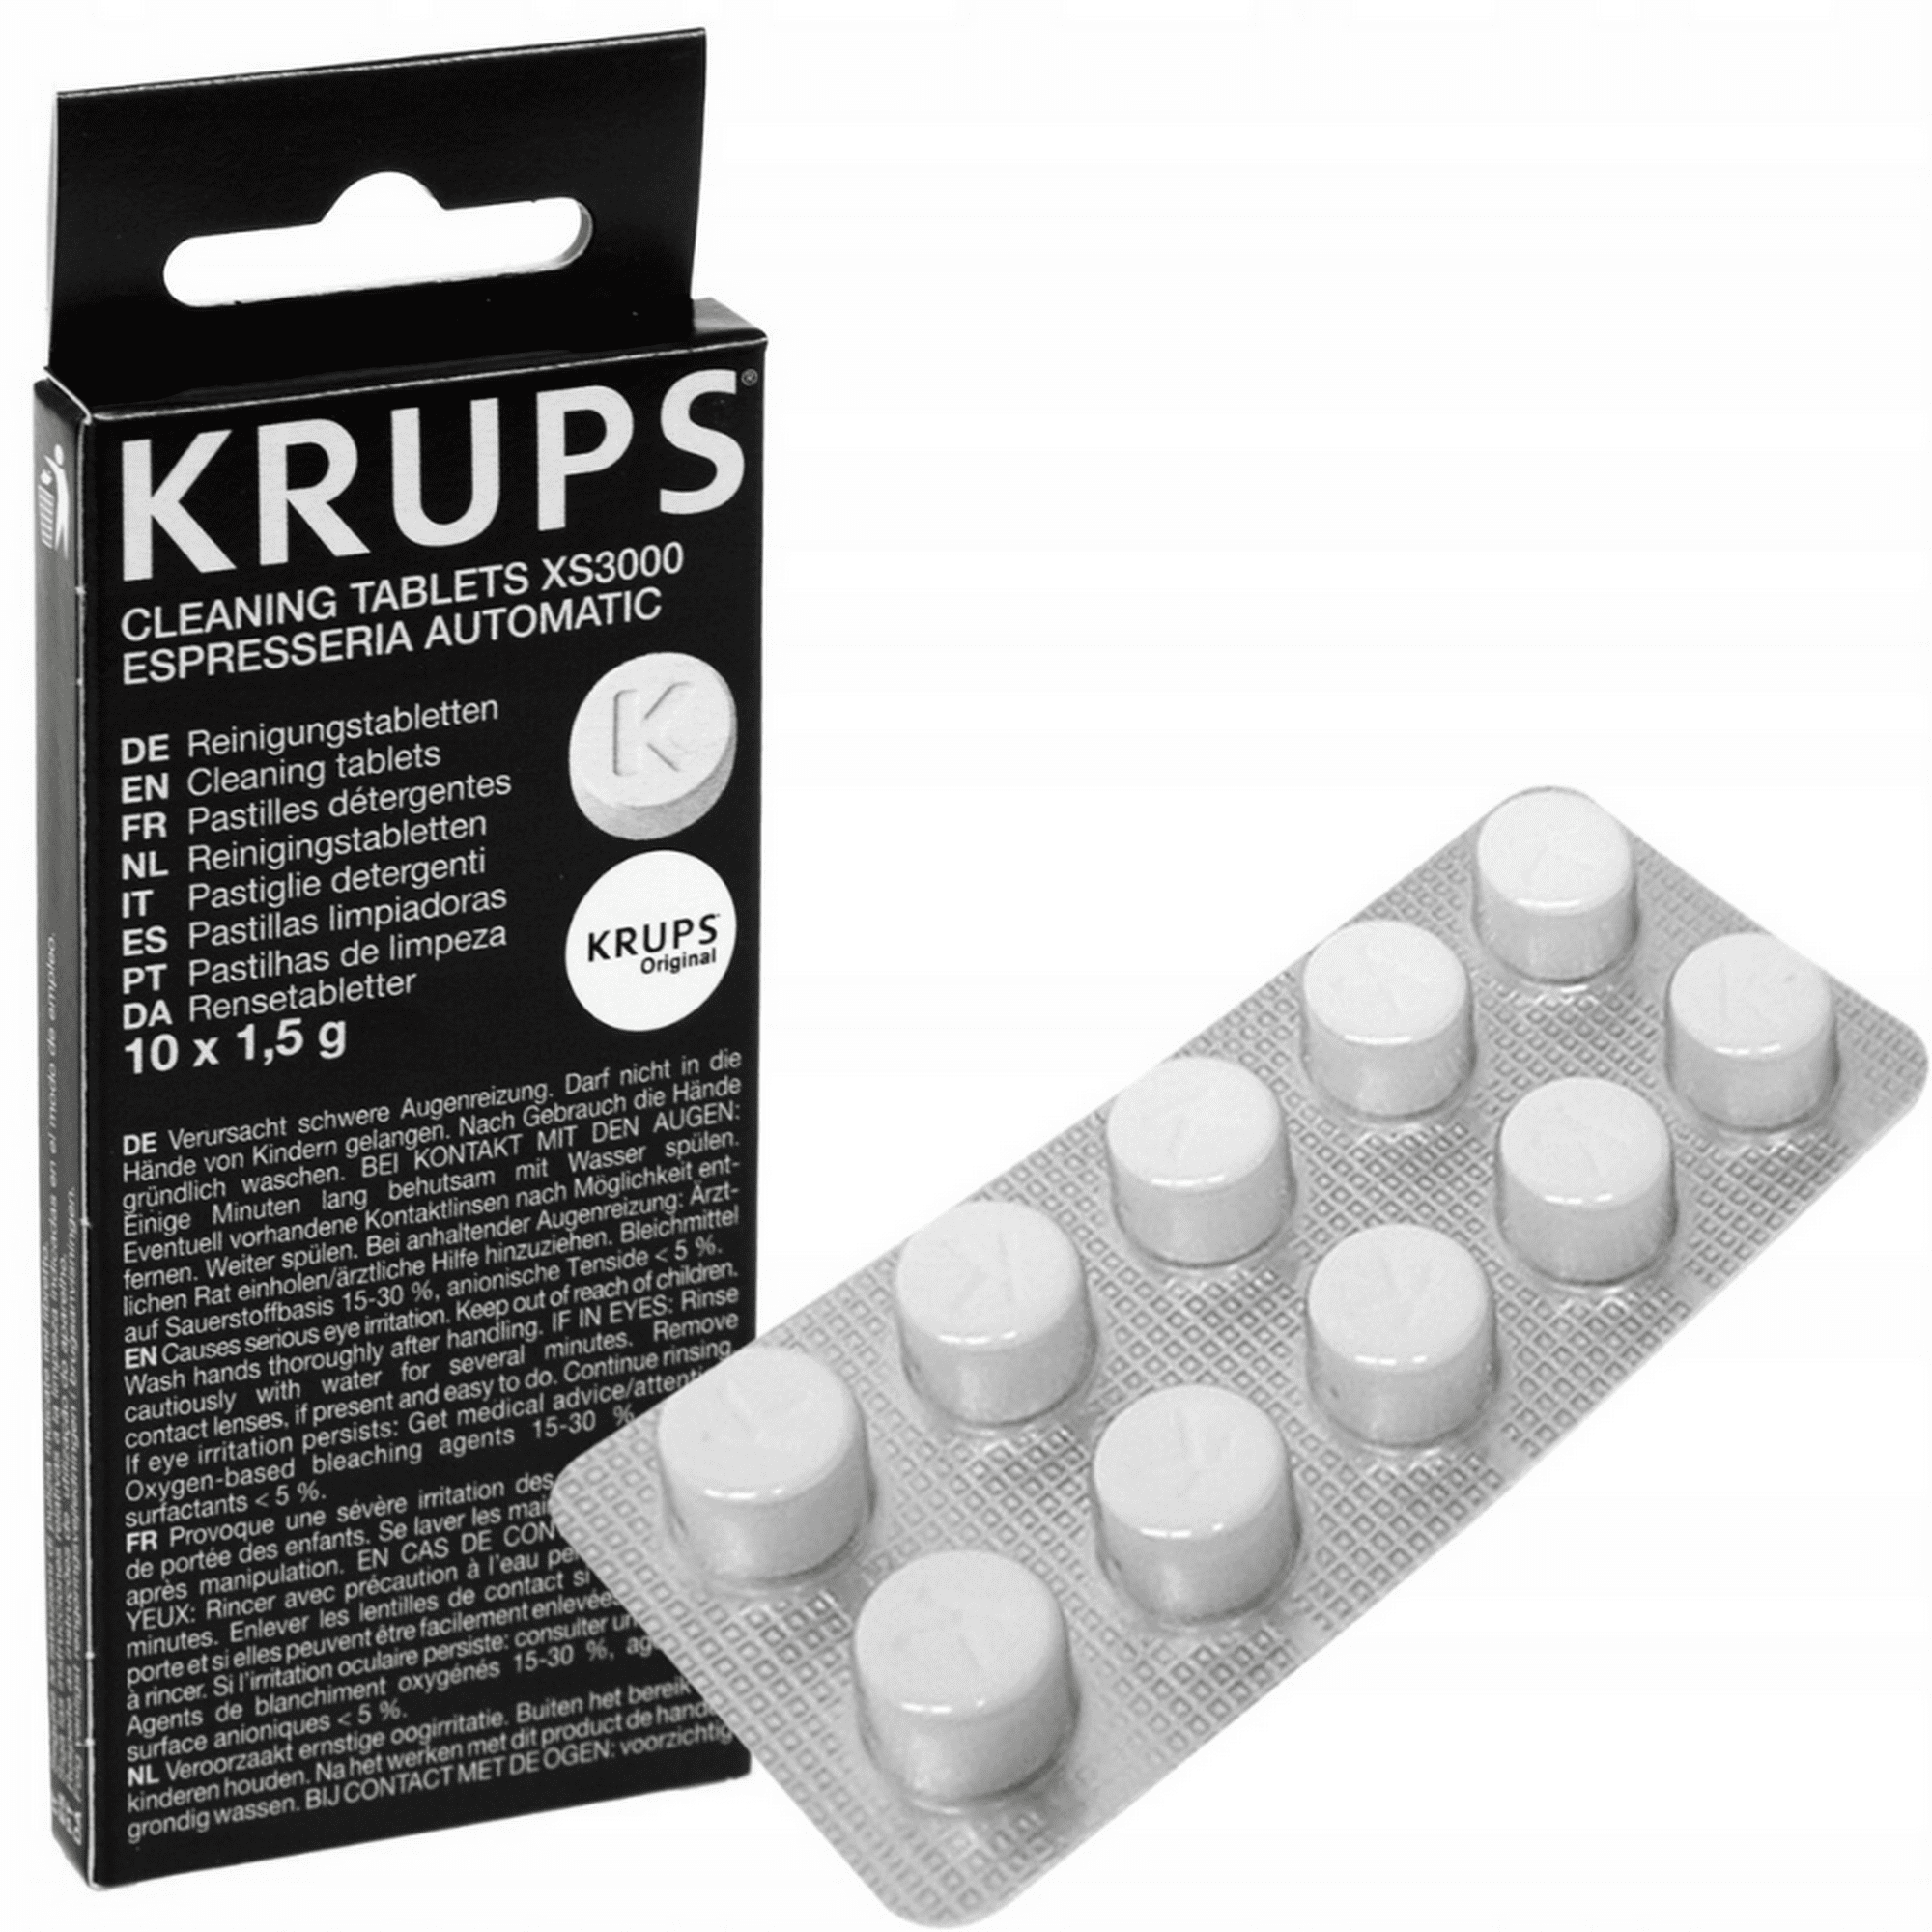 Pastillas Limpiadoras Krups XS300010, Espressaria - JUAN LUCAS - TIENDAS  ACTIVA